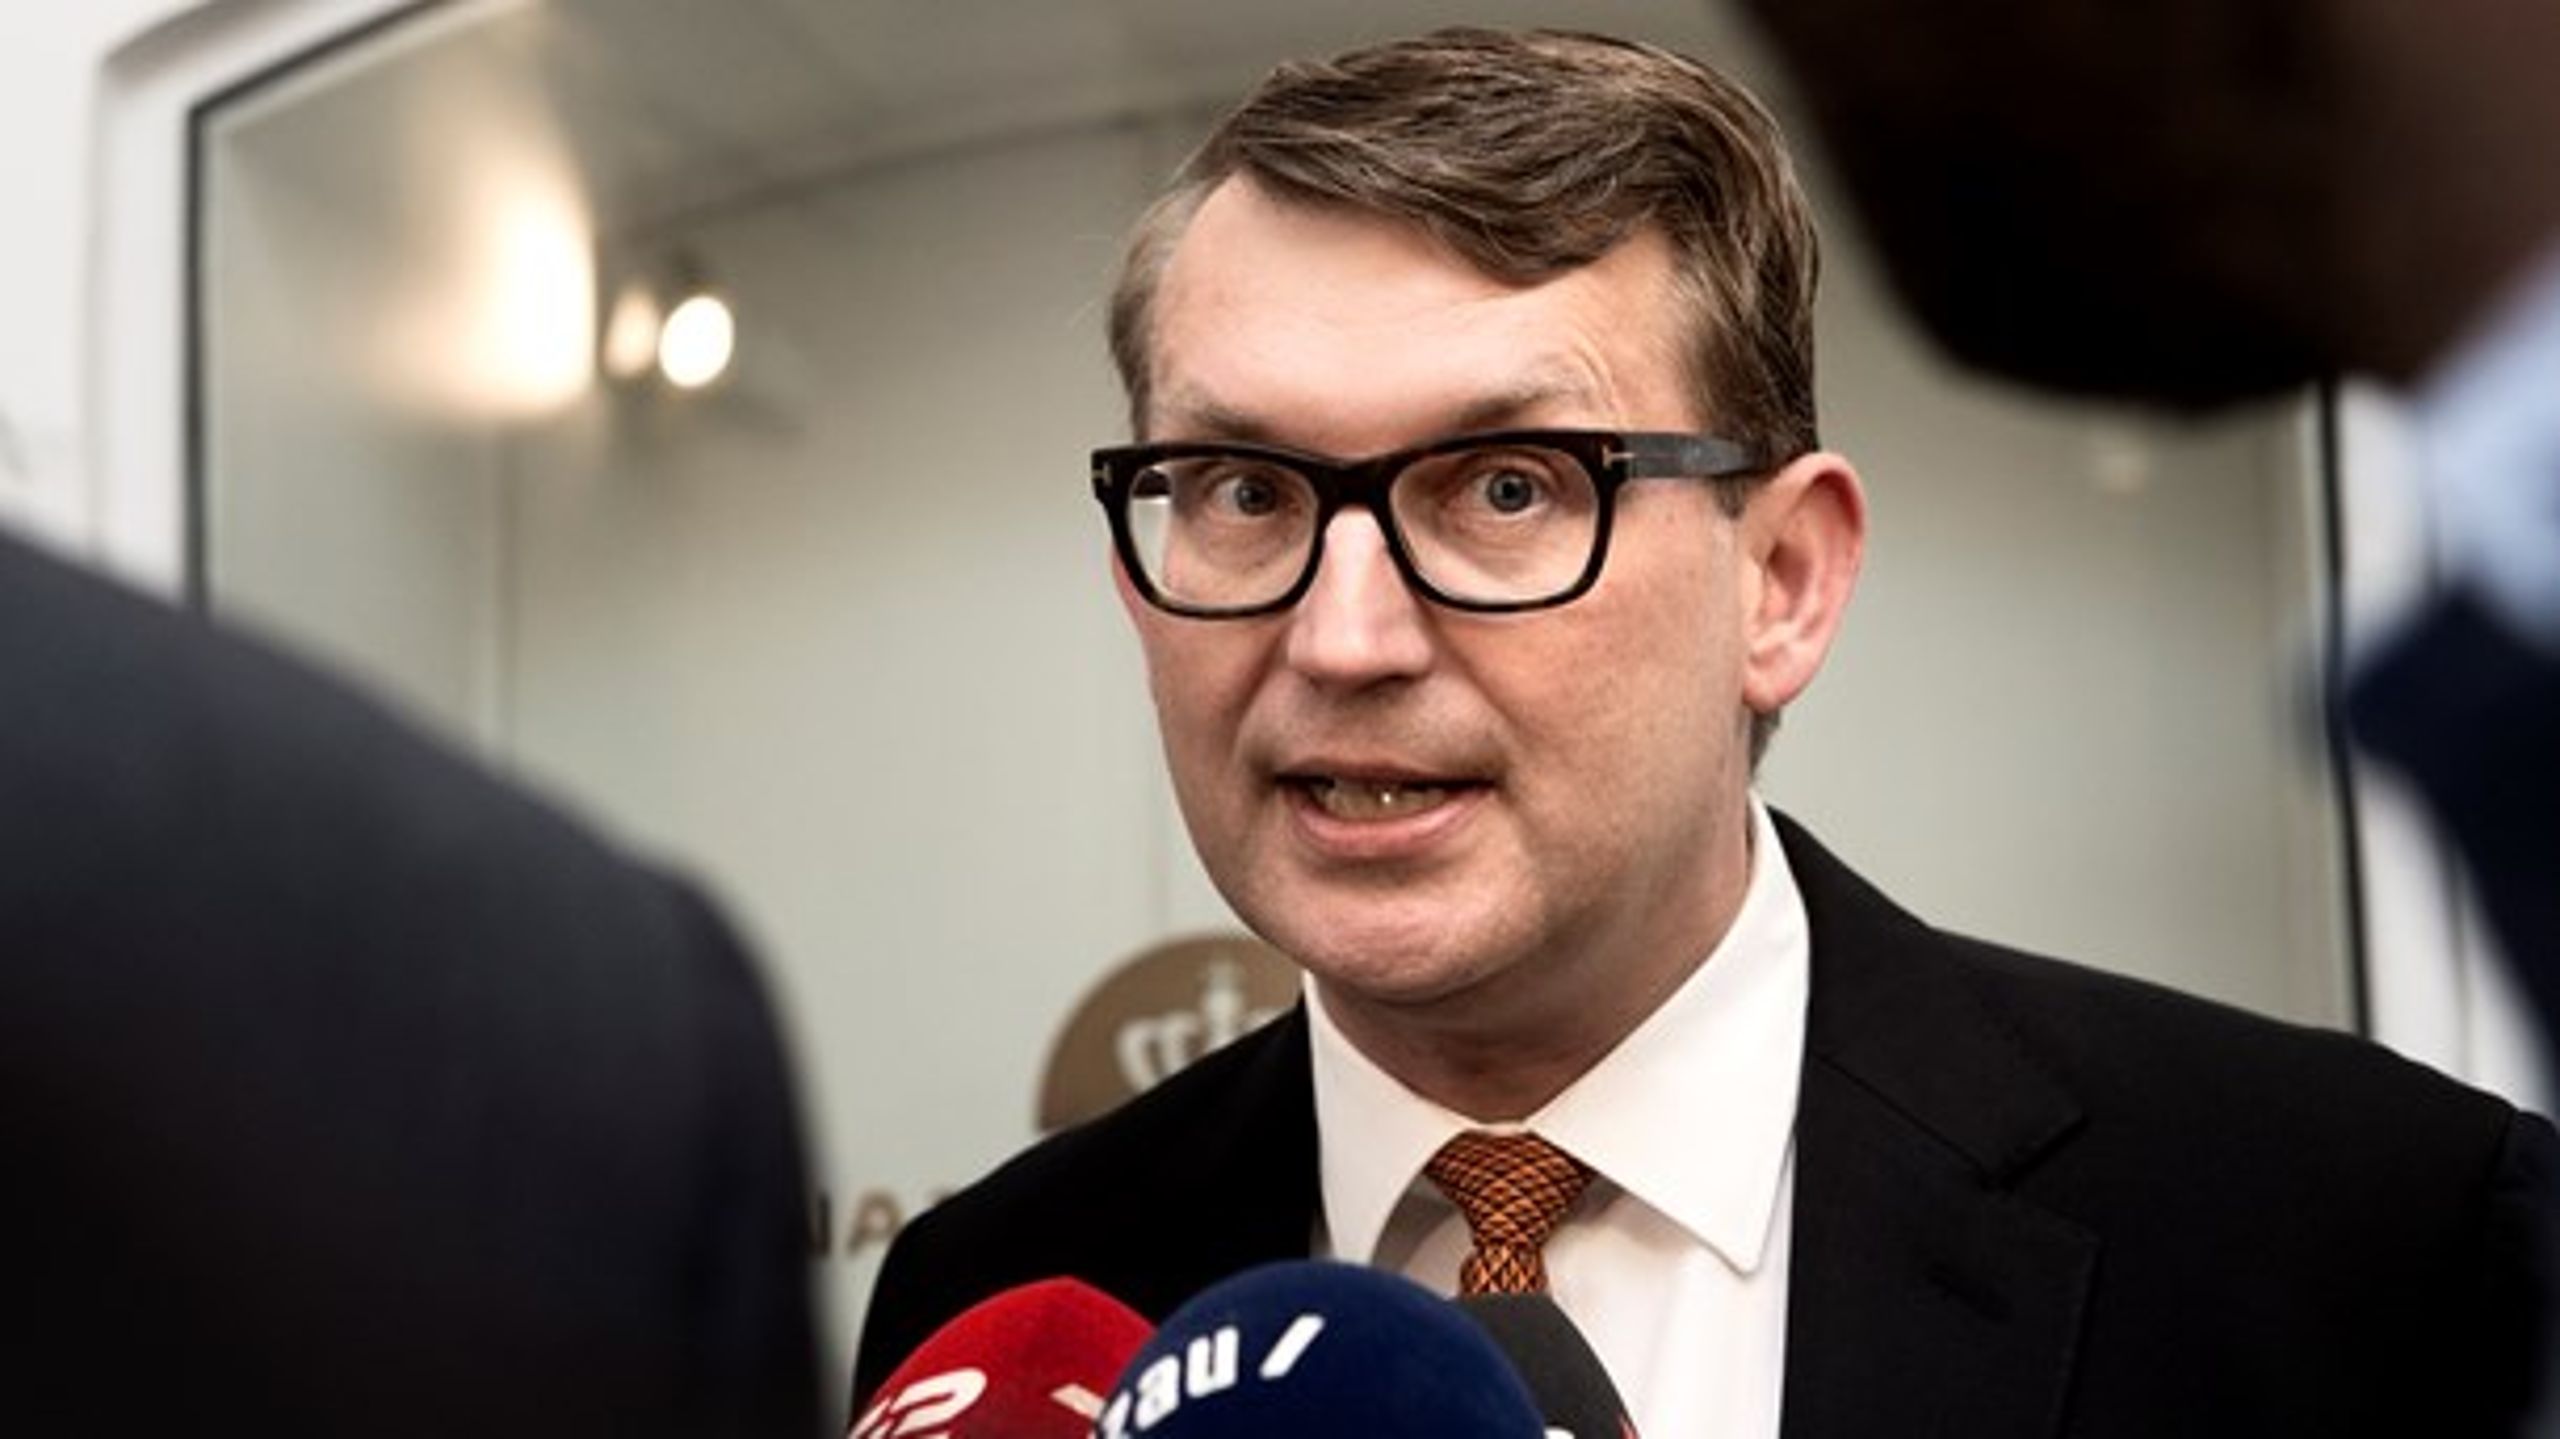 Venstres finansordfører, Troels Lund Poulsen, er en del af det flertal, som kræver, at alle fem ugers indfrosne feriepenge bliver udbetalt.